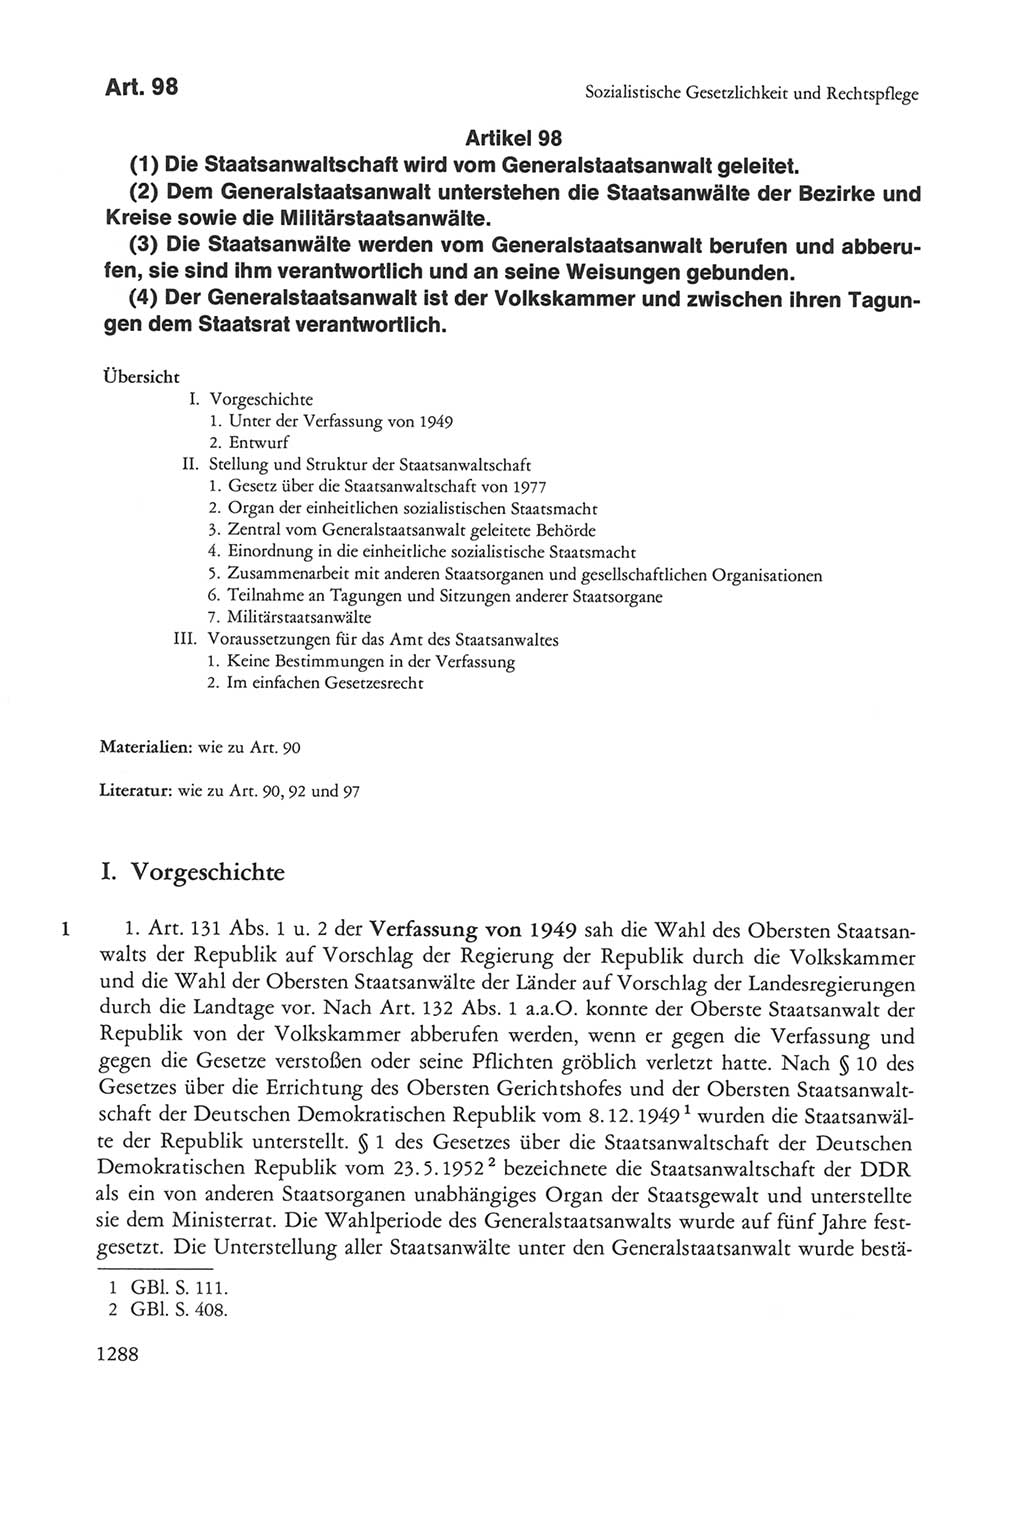 Die sozialistische Verfassung der Deutschen Demokratischen Republik (DDR), Kommentar mit einem Nachtrag 1997, Seite 1288 (Soz. Verf. DDR Komm. Nachtr. 1997, S. 1288)